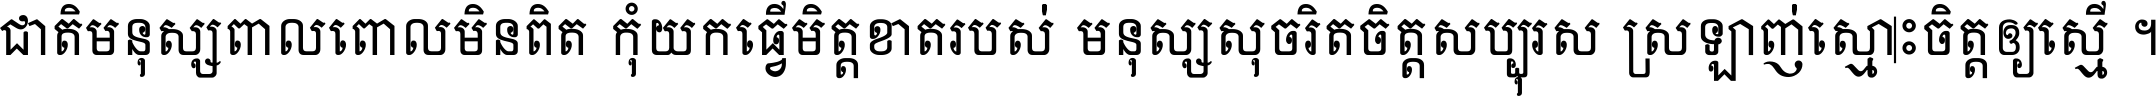 Khmer Serif